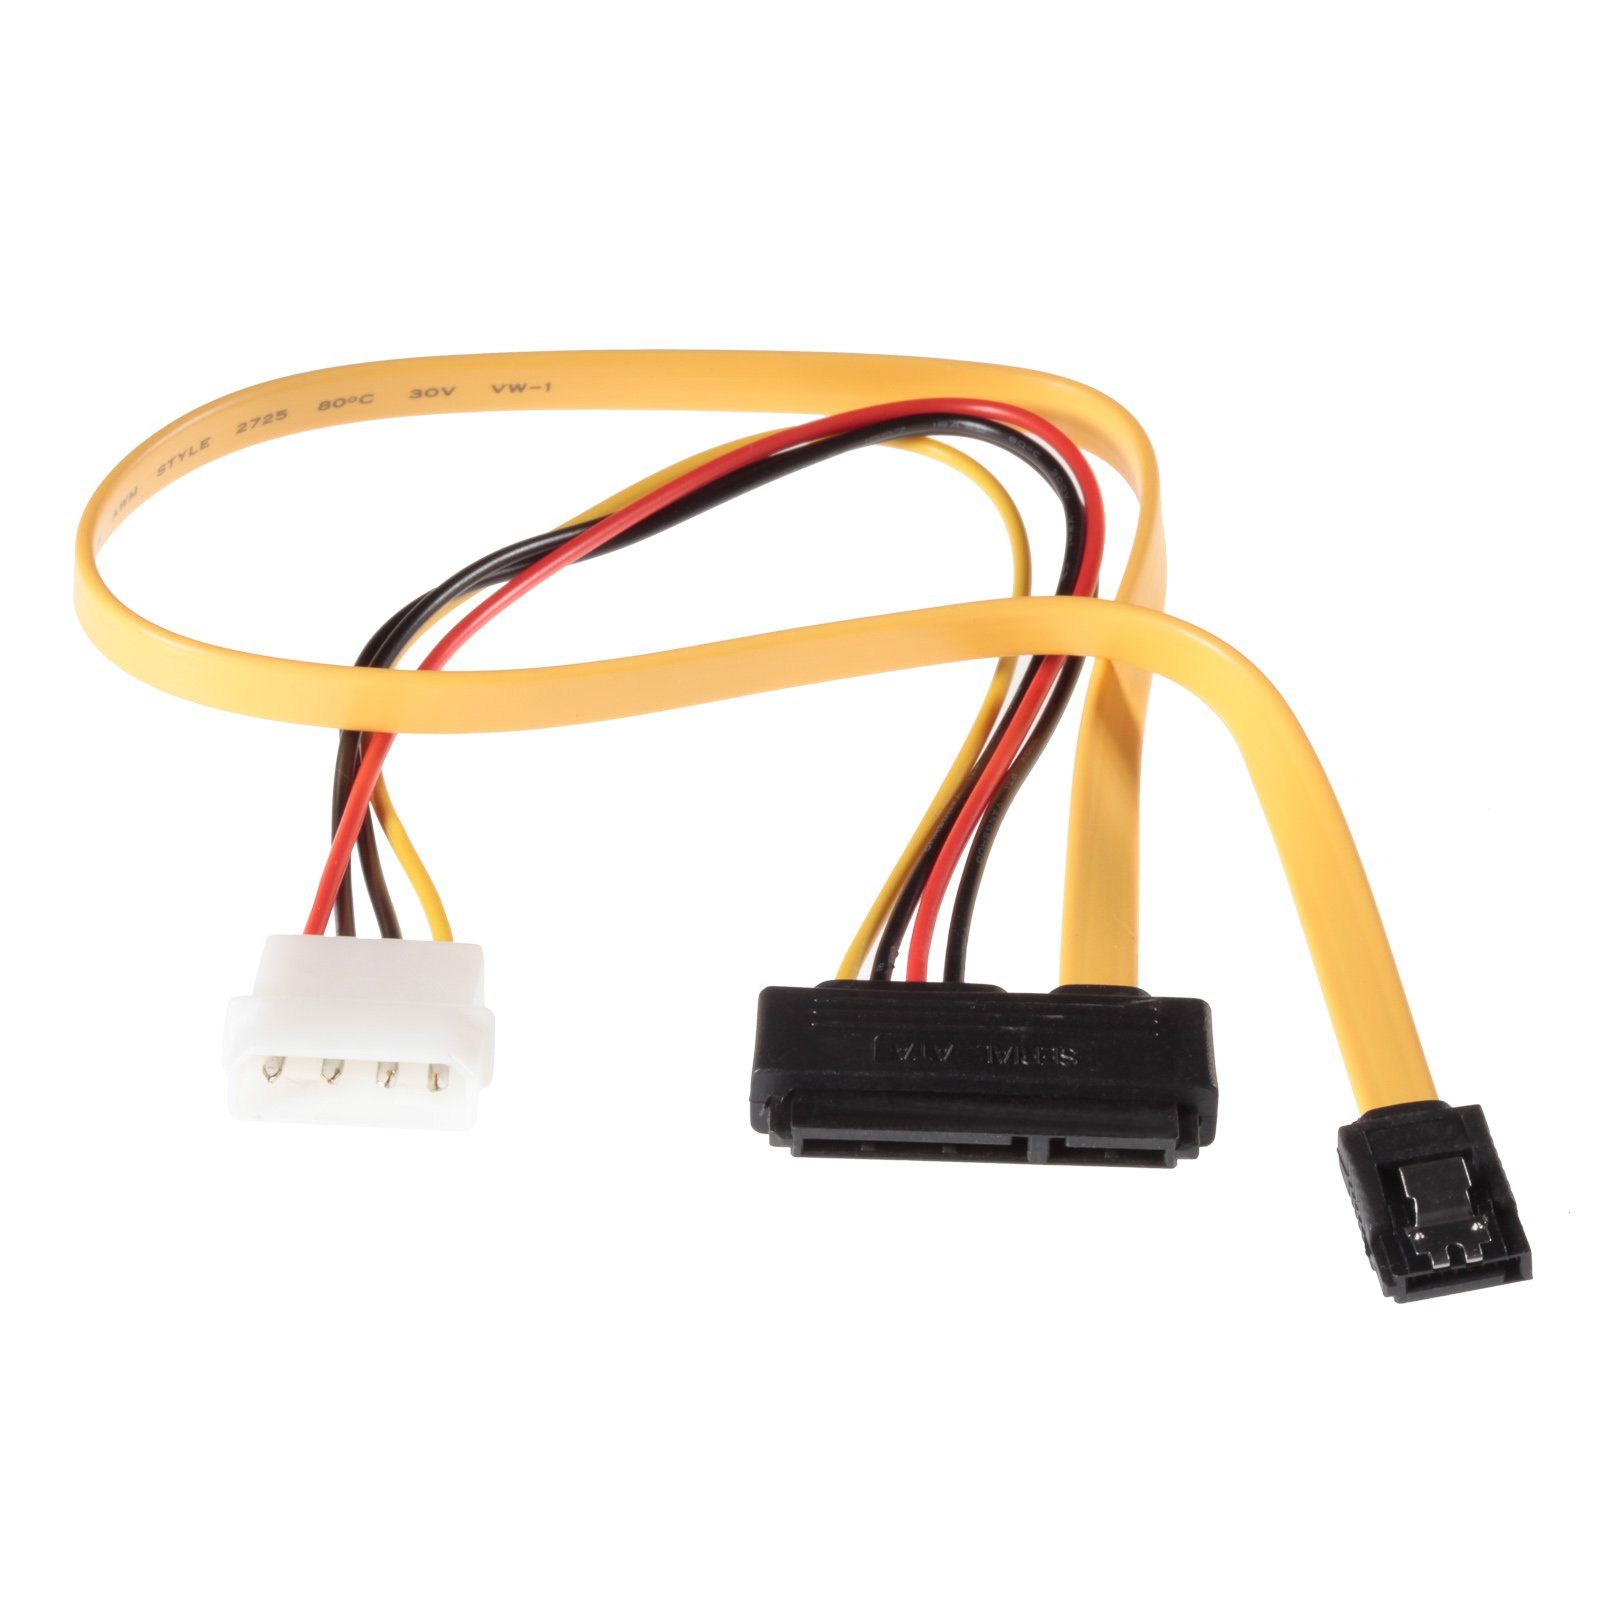 Poppstar SATA Stromkabel SATA, mit 6 Datenkabel (50cm) Dualkabel (30cm) + Gbit/s, HDD Stromkabel, Y-Kabel bis SSD 3 Molex